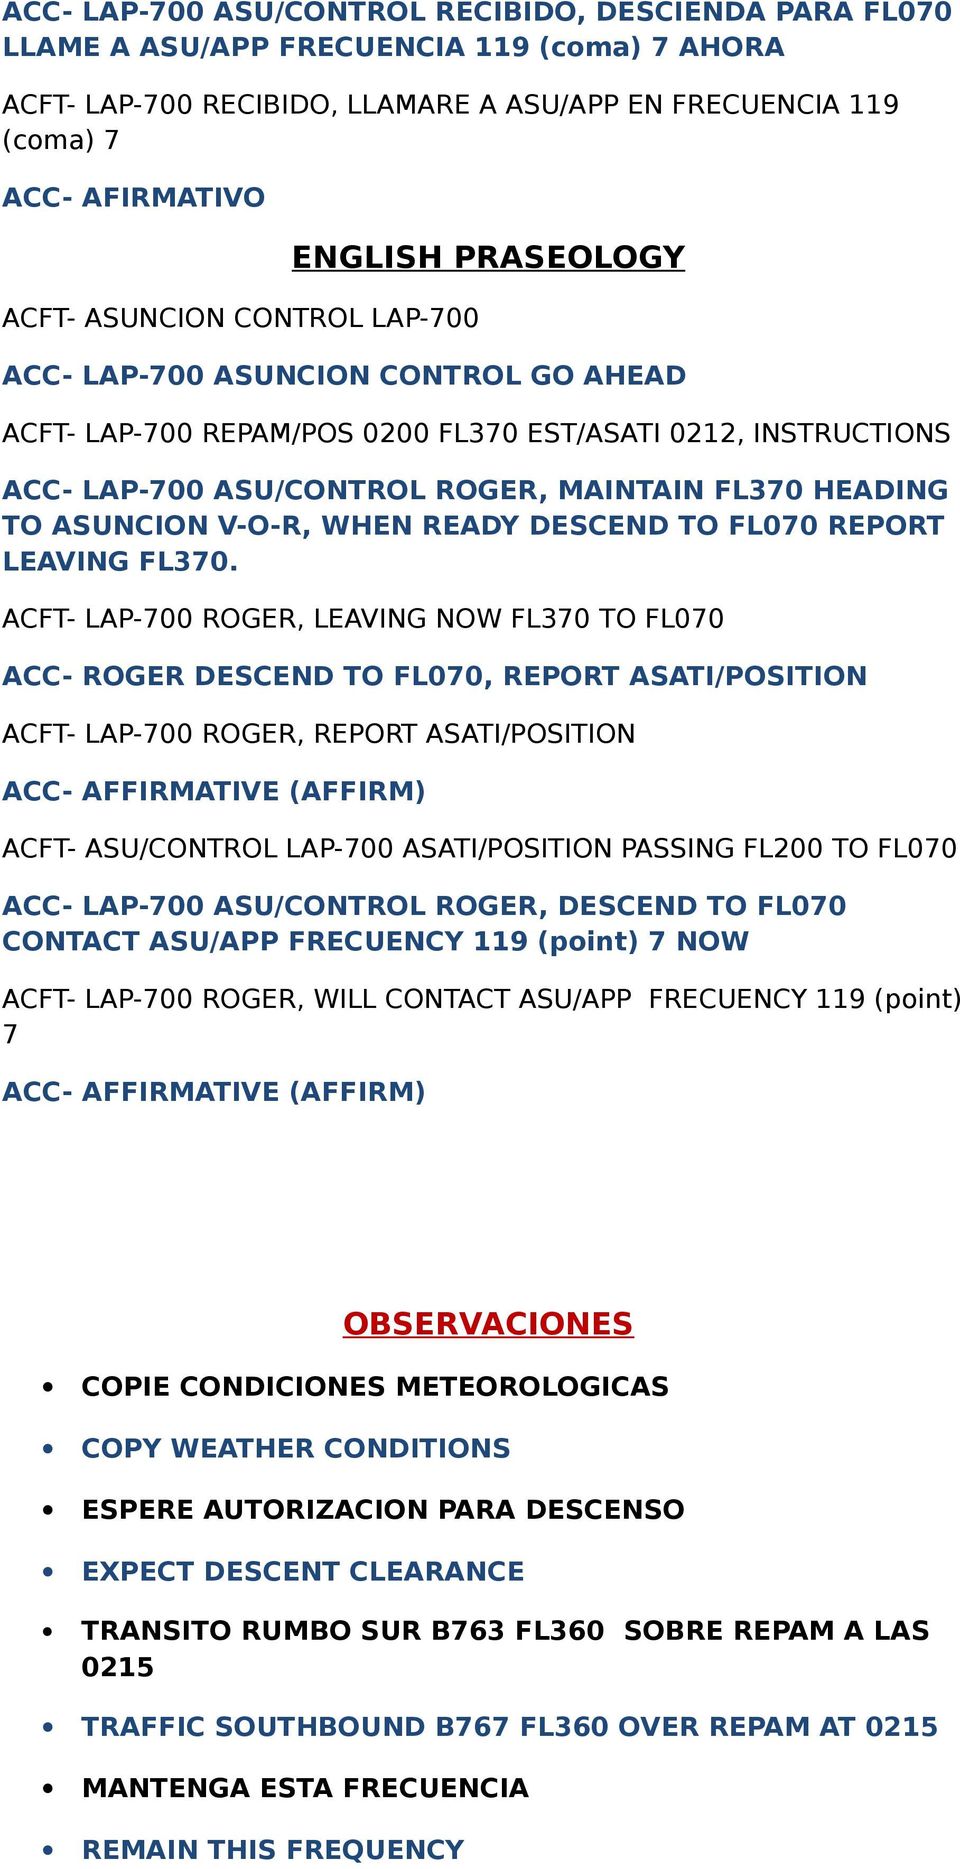 HEADING TO ASUNCION V-O-R, WHEN READY DESCEND TO FL070 REPORT LEAVING FL370.